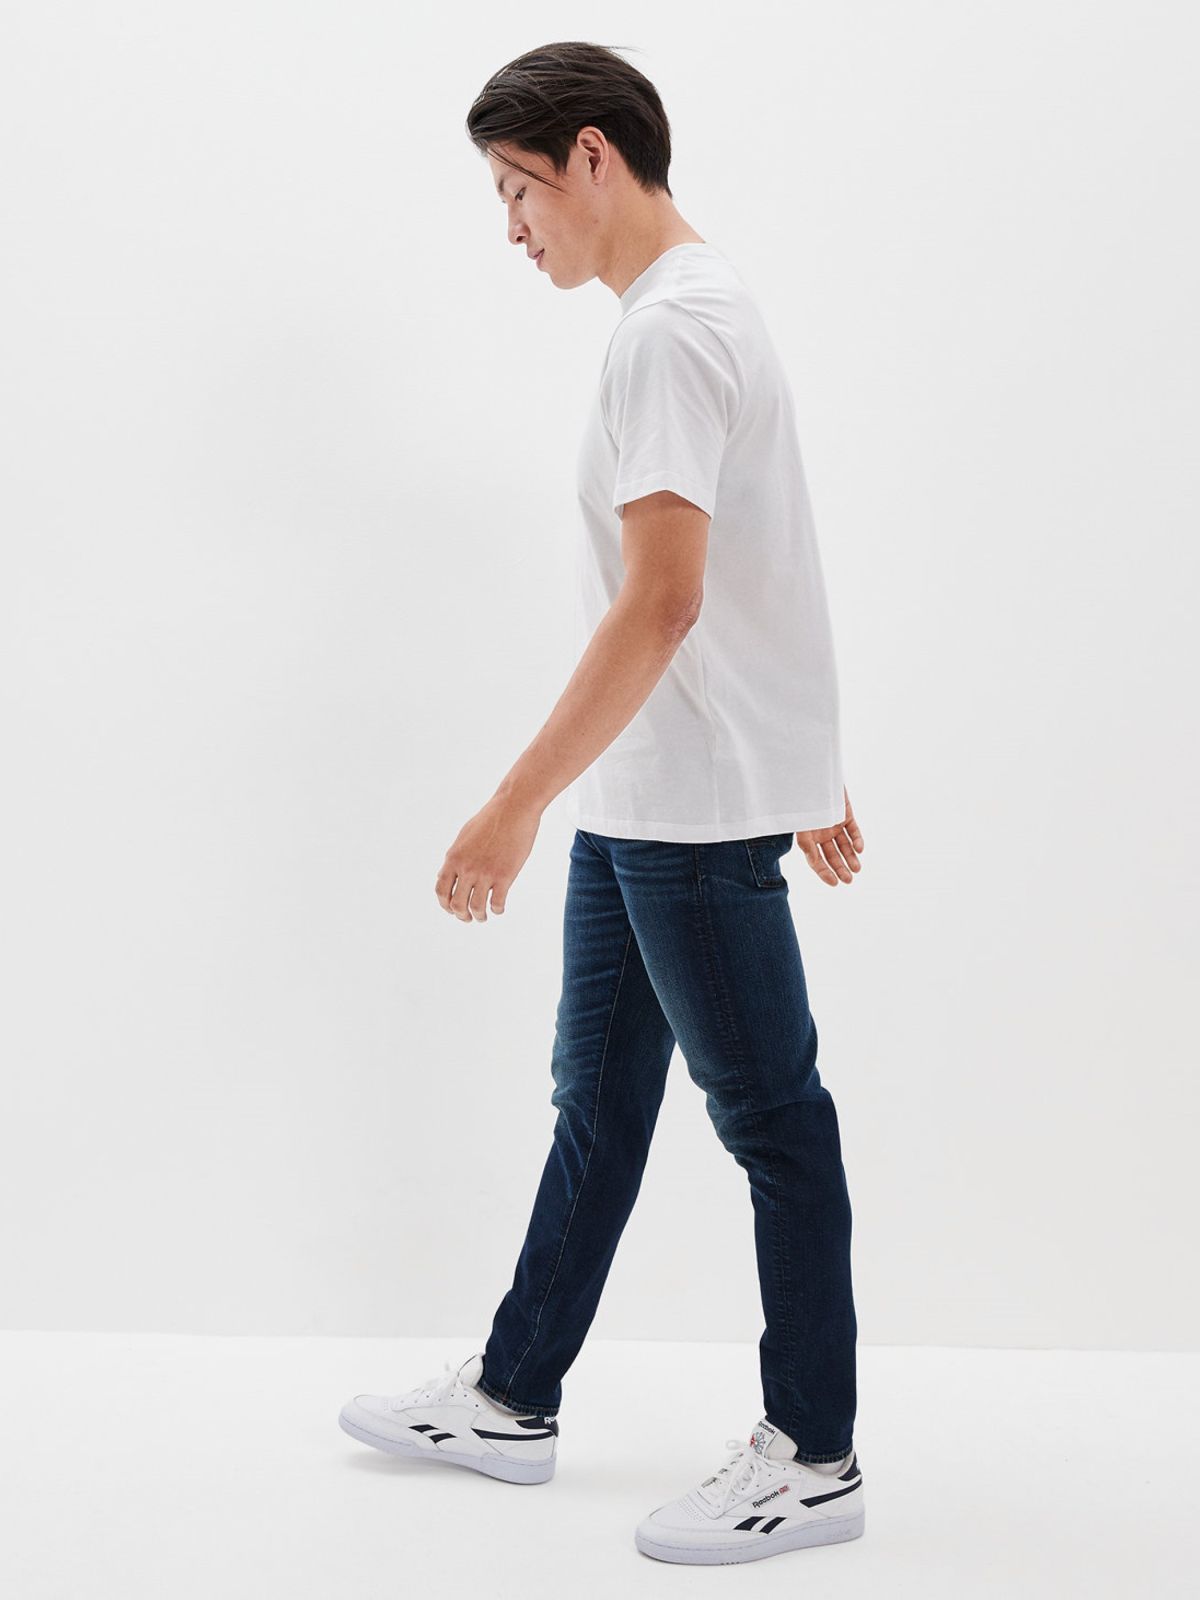  ג'ינס ארוך סקיני Dark clean של AMERICAN EAGLE